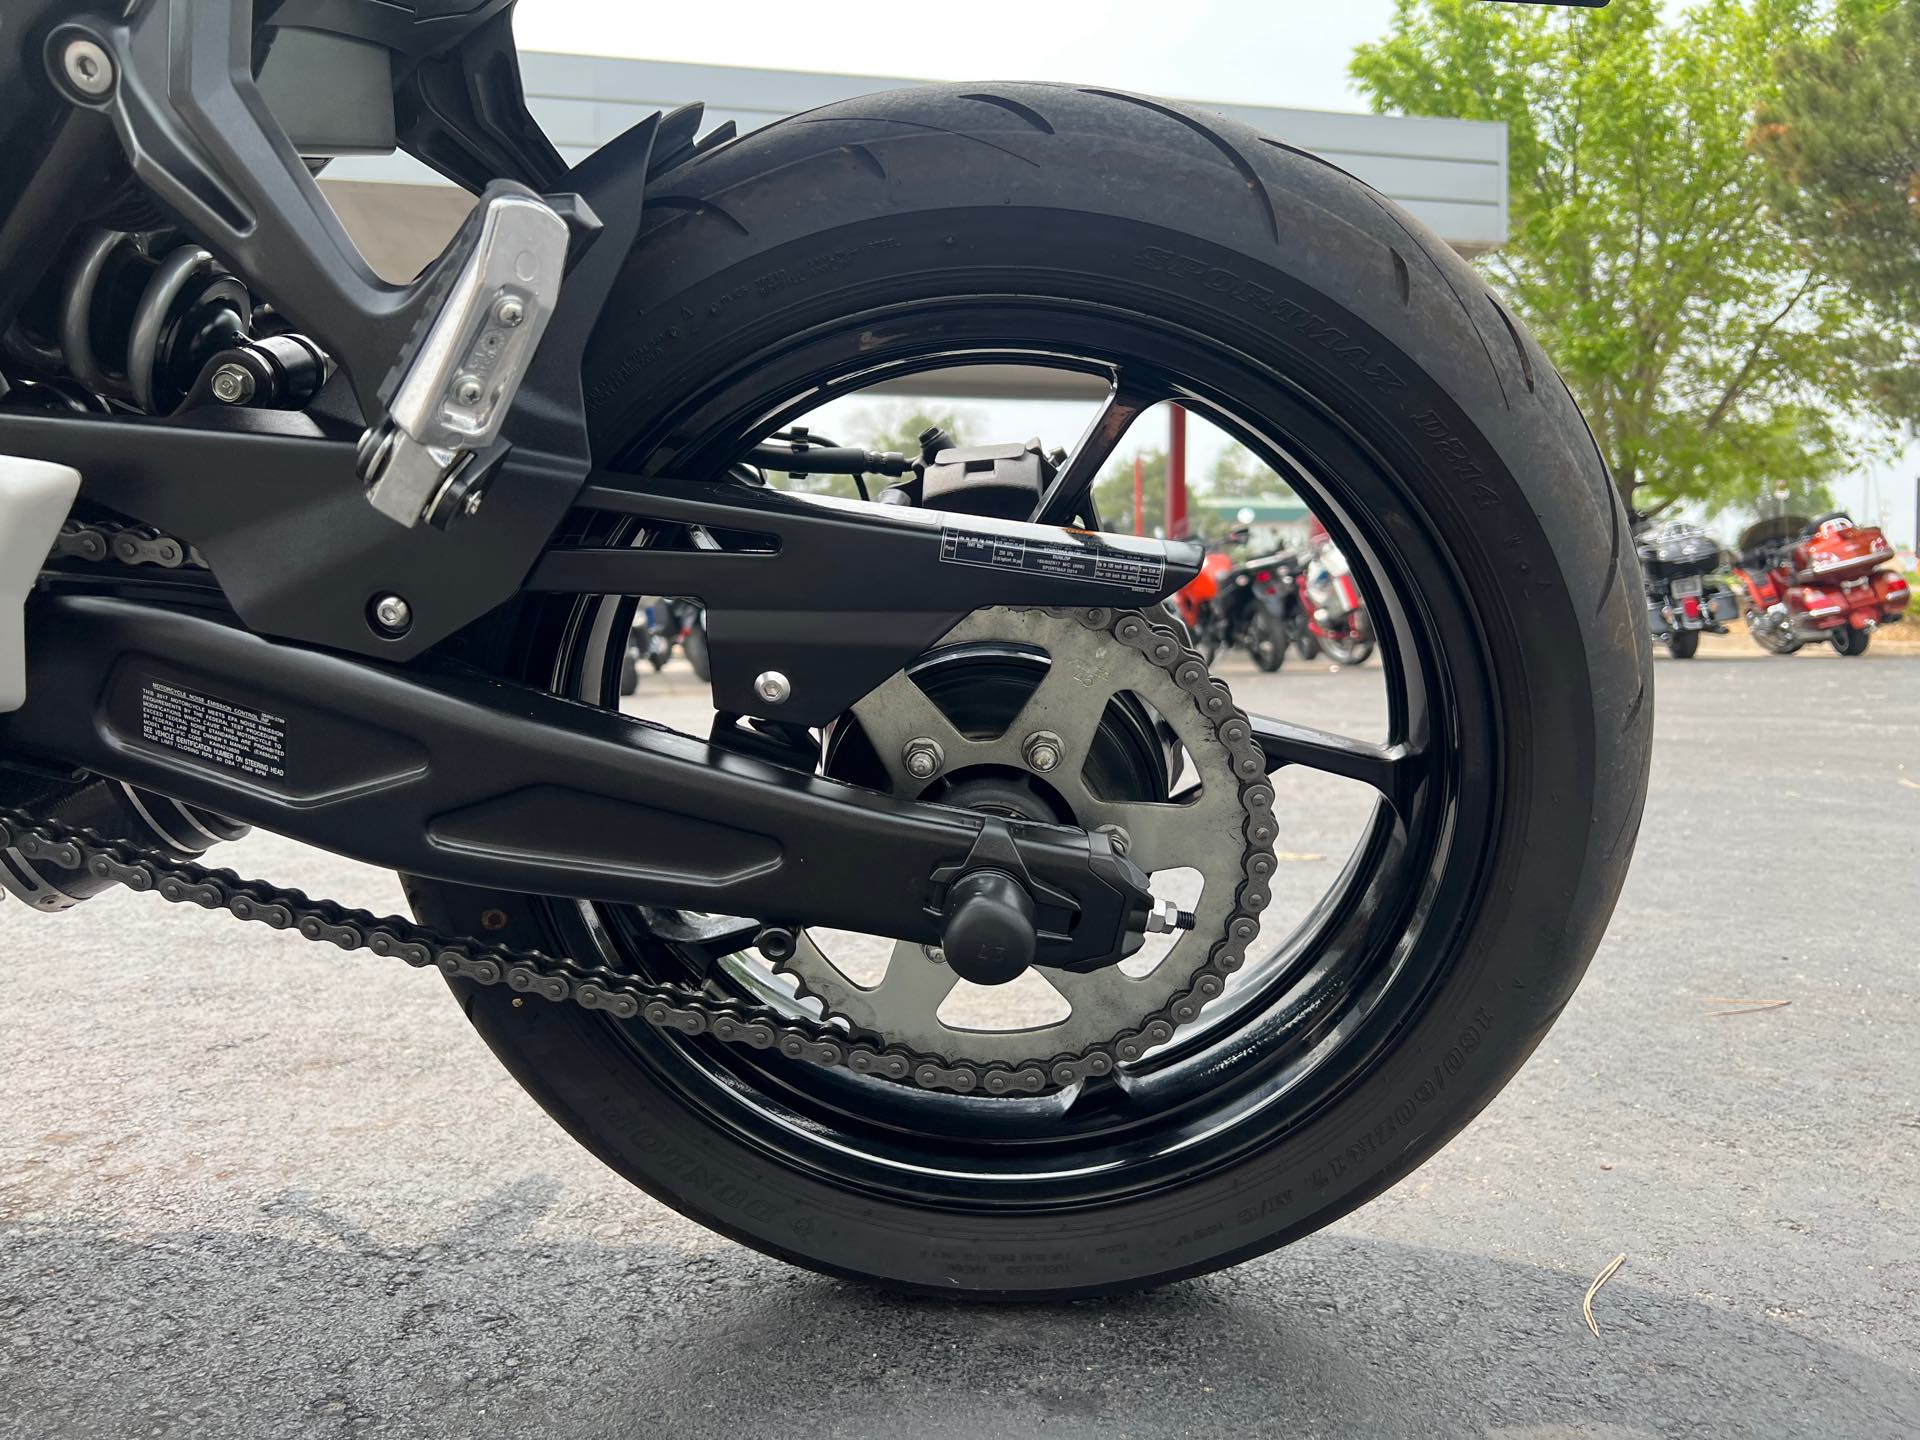 2017 Kawasaki Ninja 650 Base at Aces Motorcycles - Fort Collins